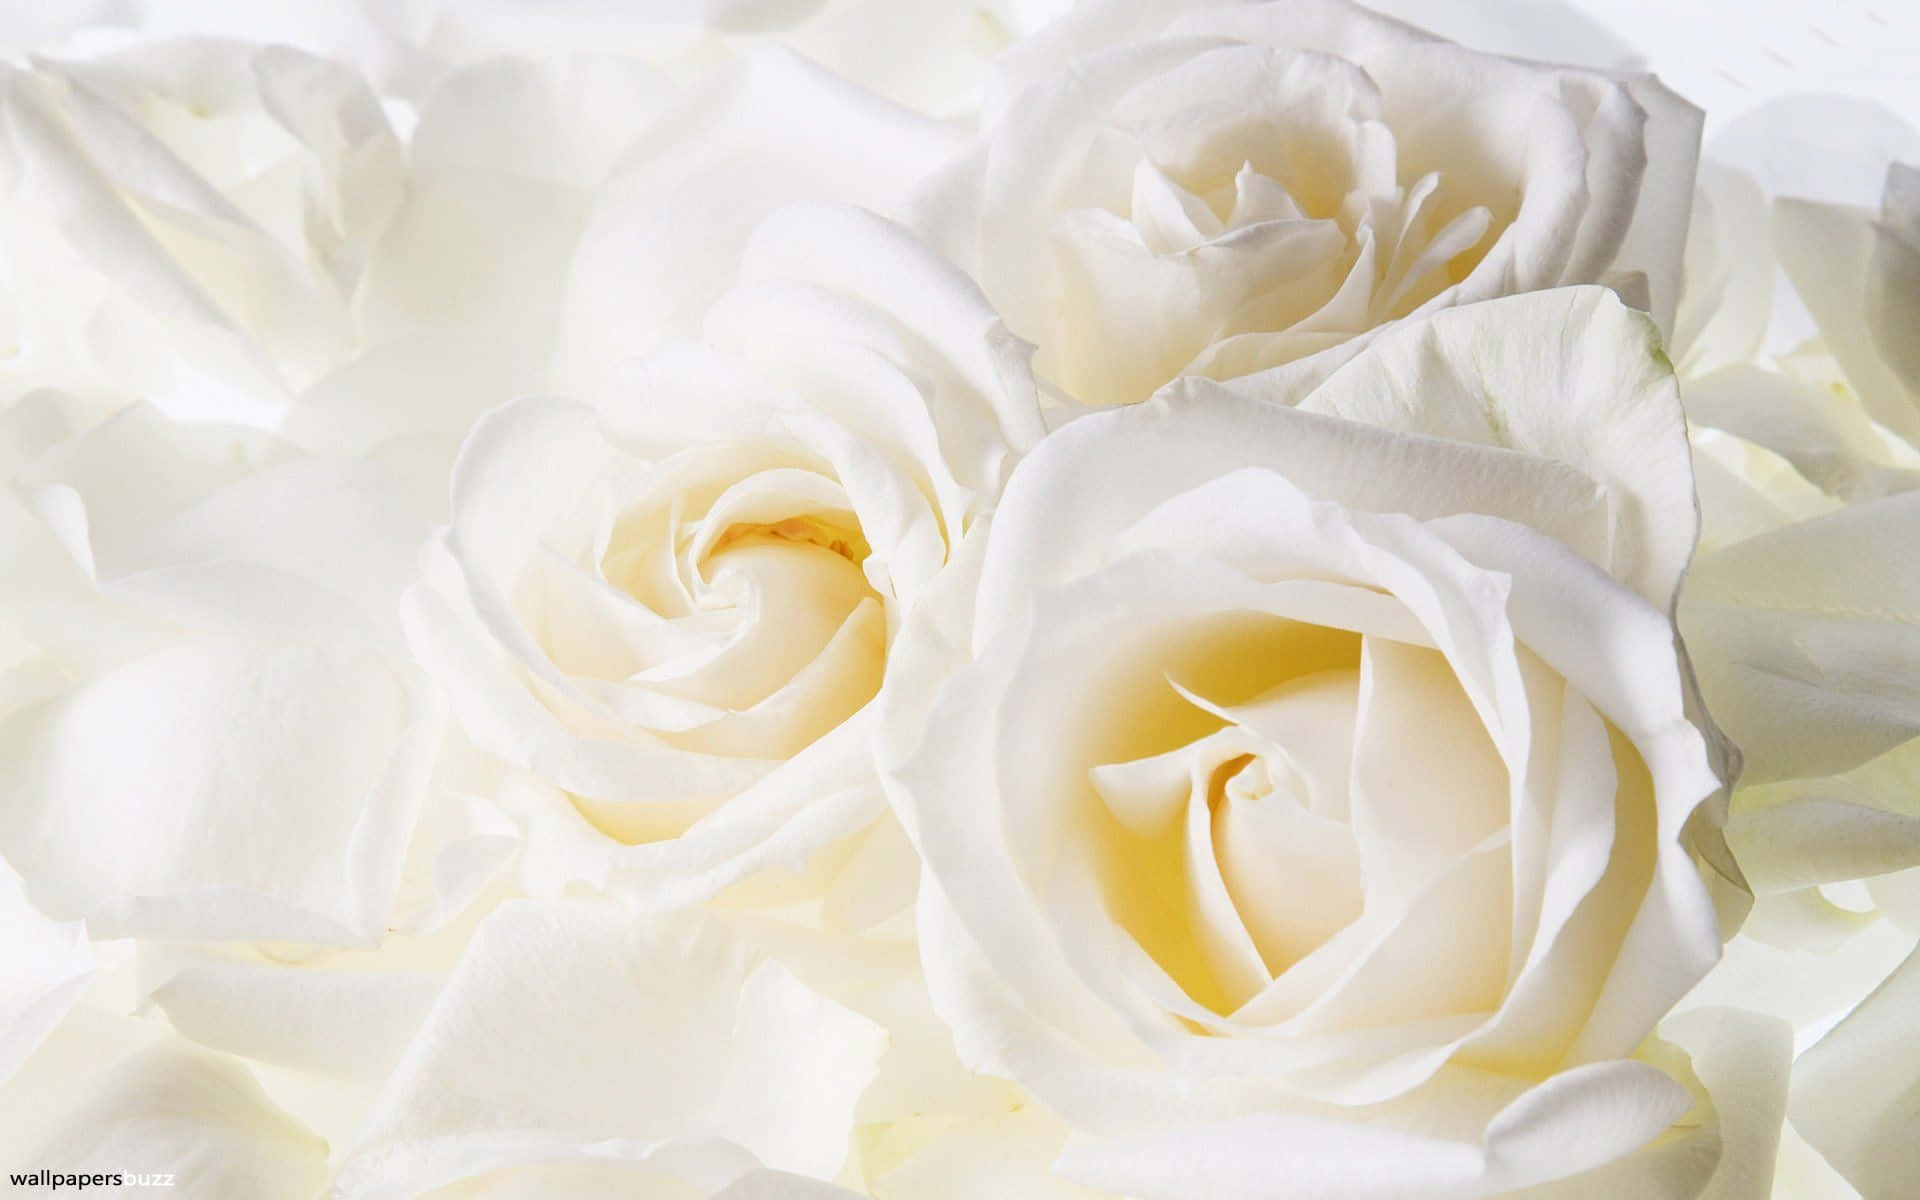 En levende hvid rose fanger opmærksomhed i haven Wallpaper